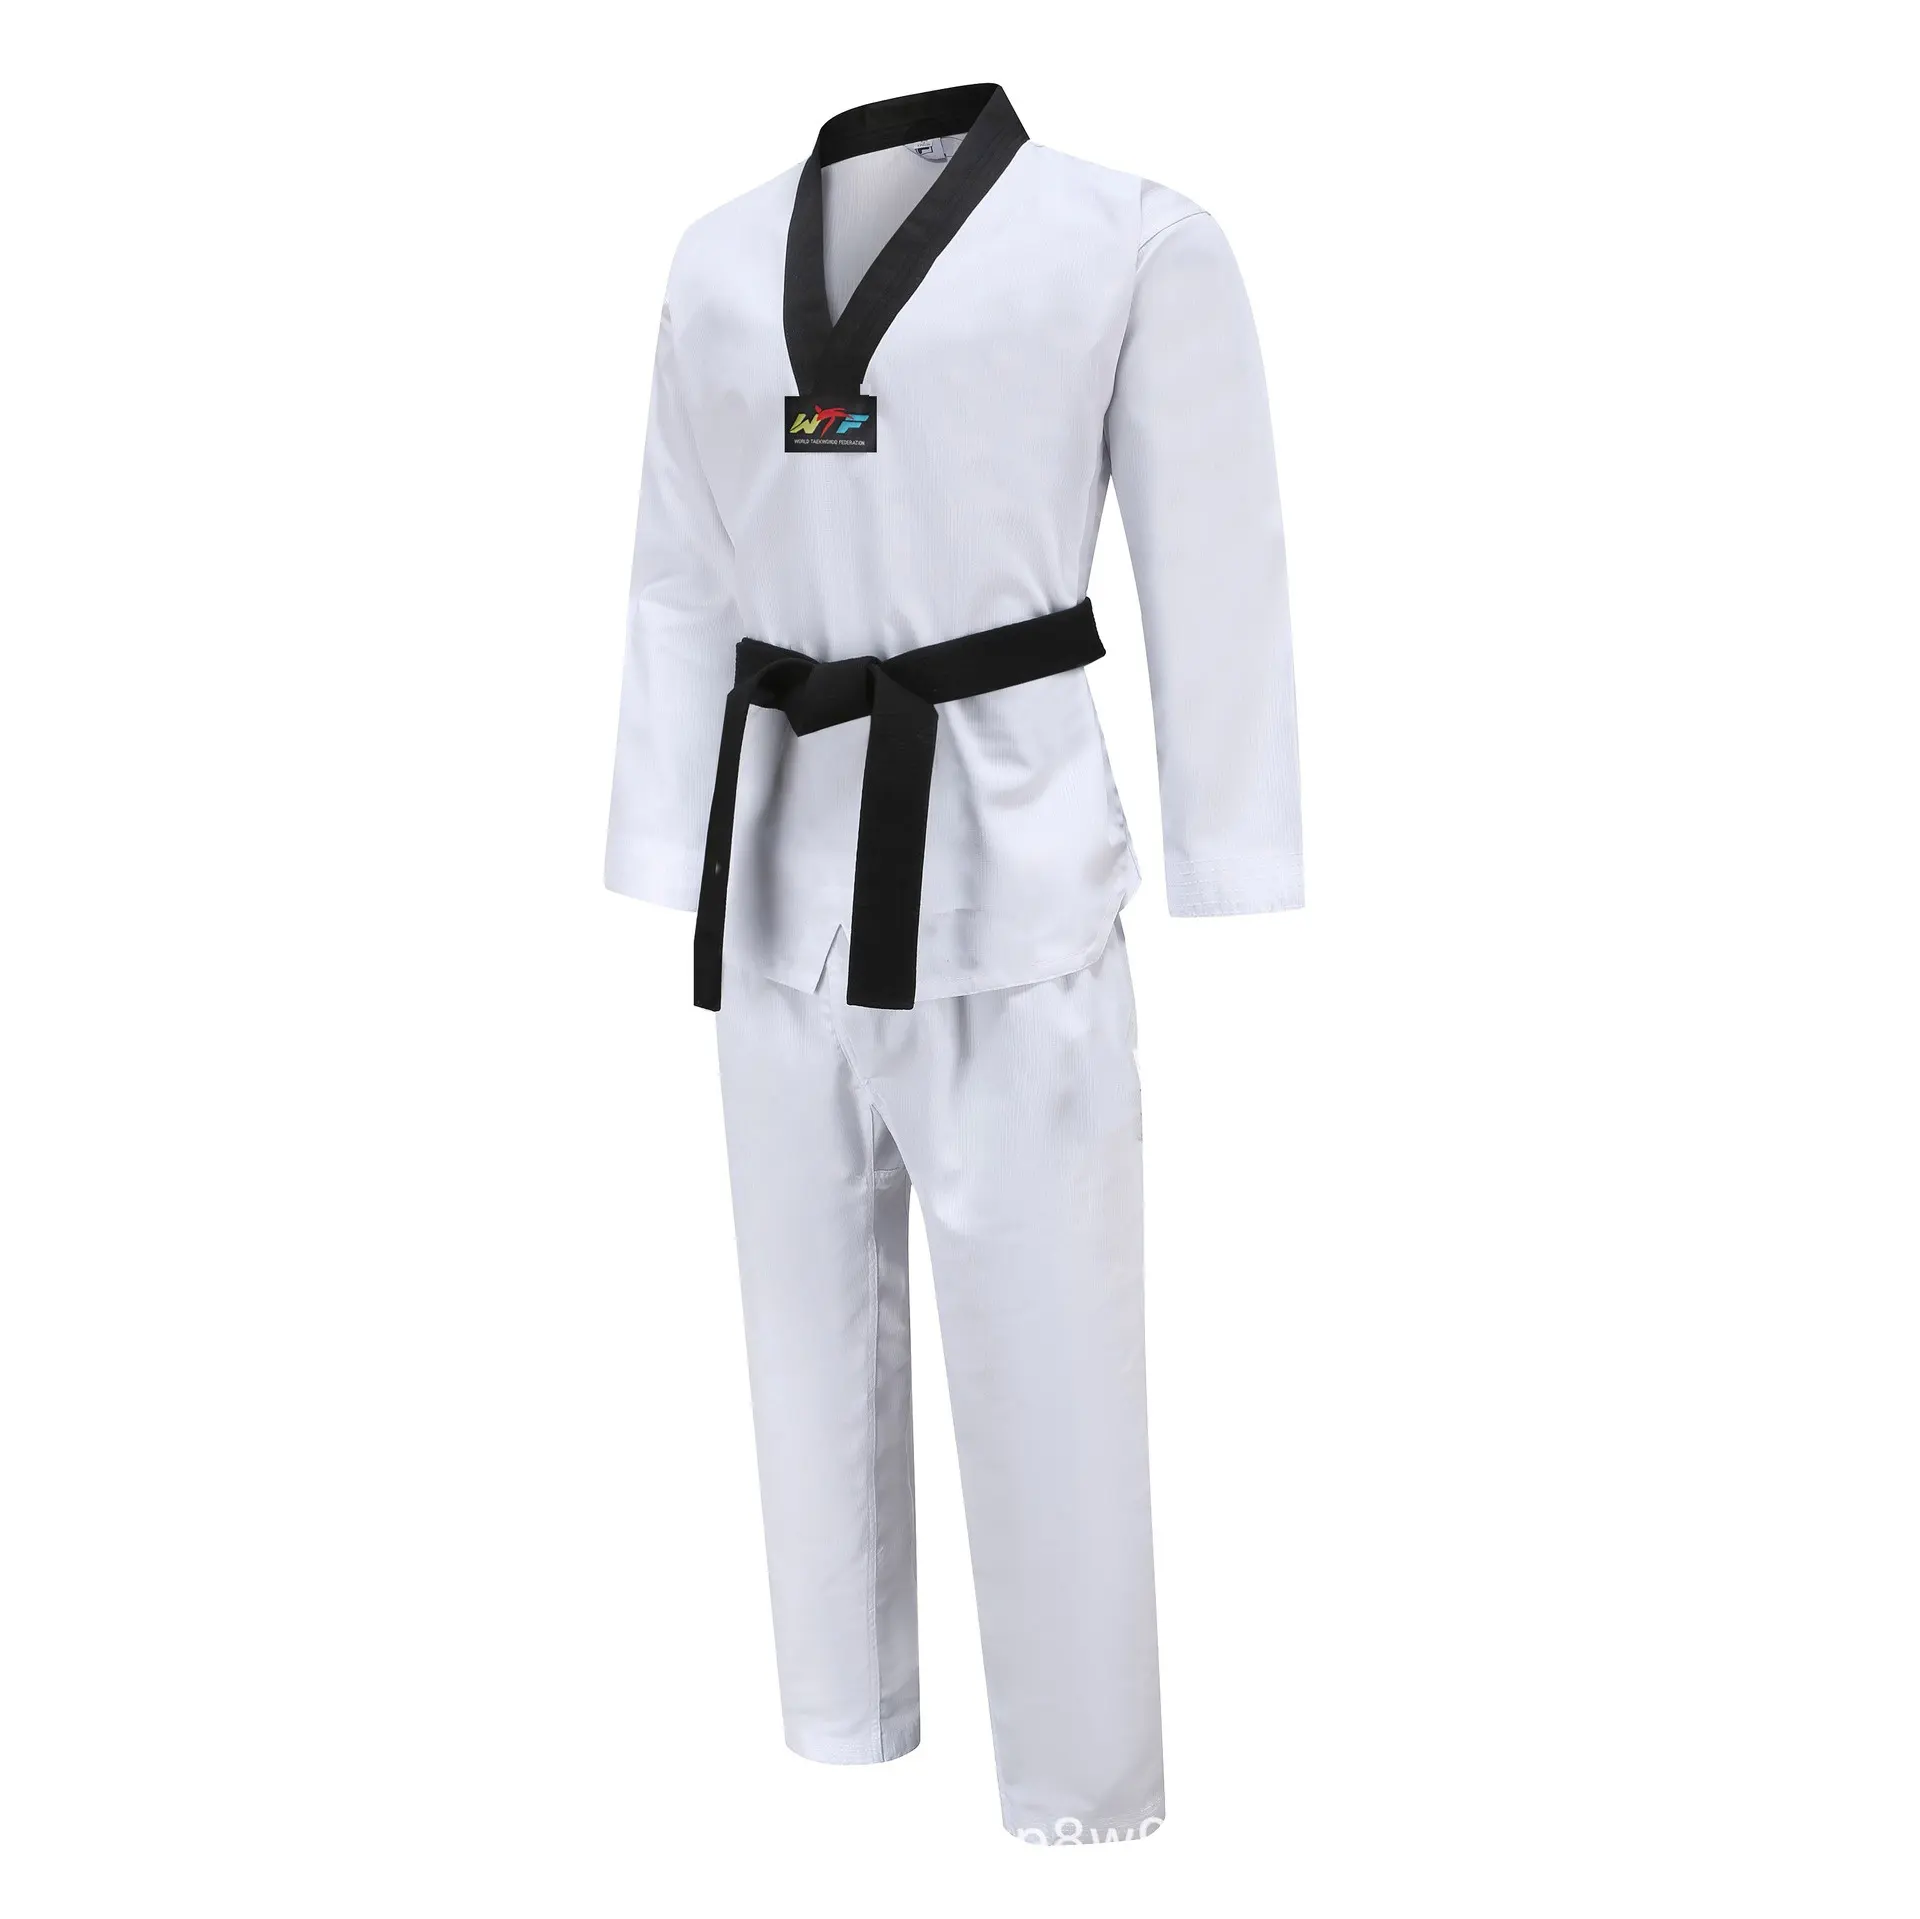 Quteng Taekwondo Dobok Itf Uniform Mooto Uniformen Taekwondo Itf Dobok Ligero Taekwondo